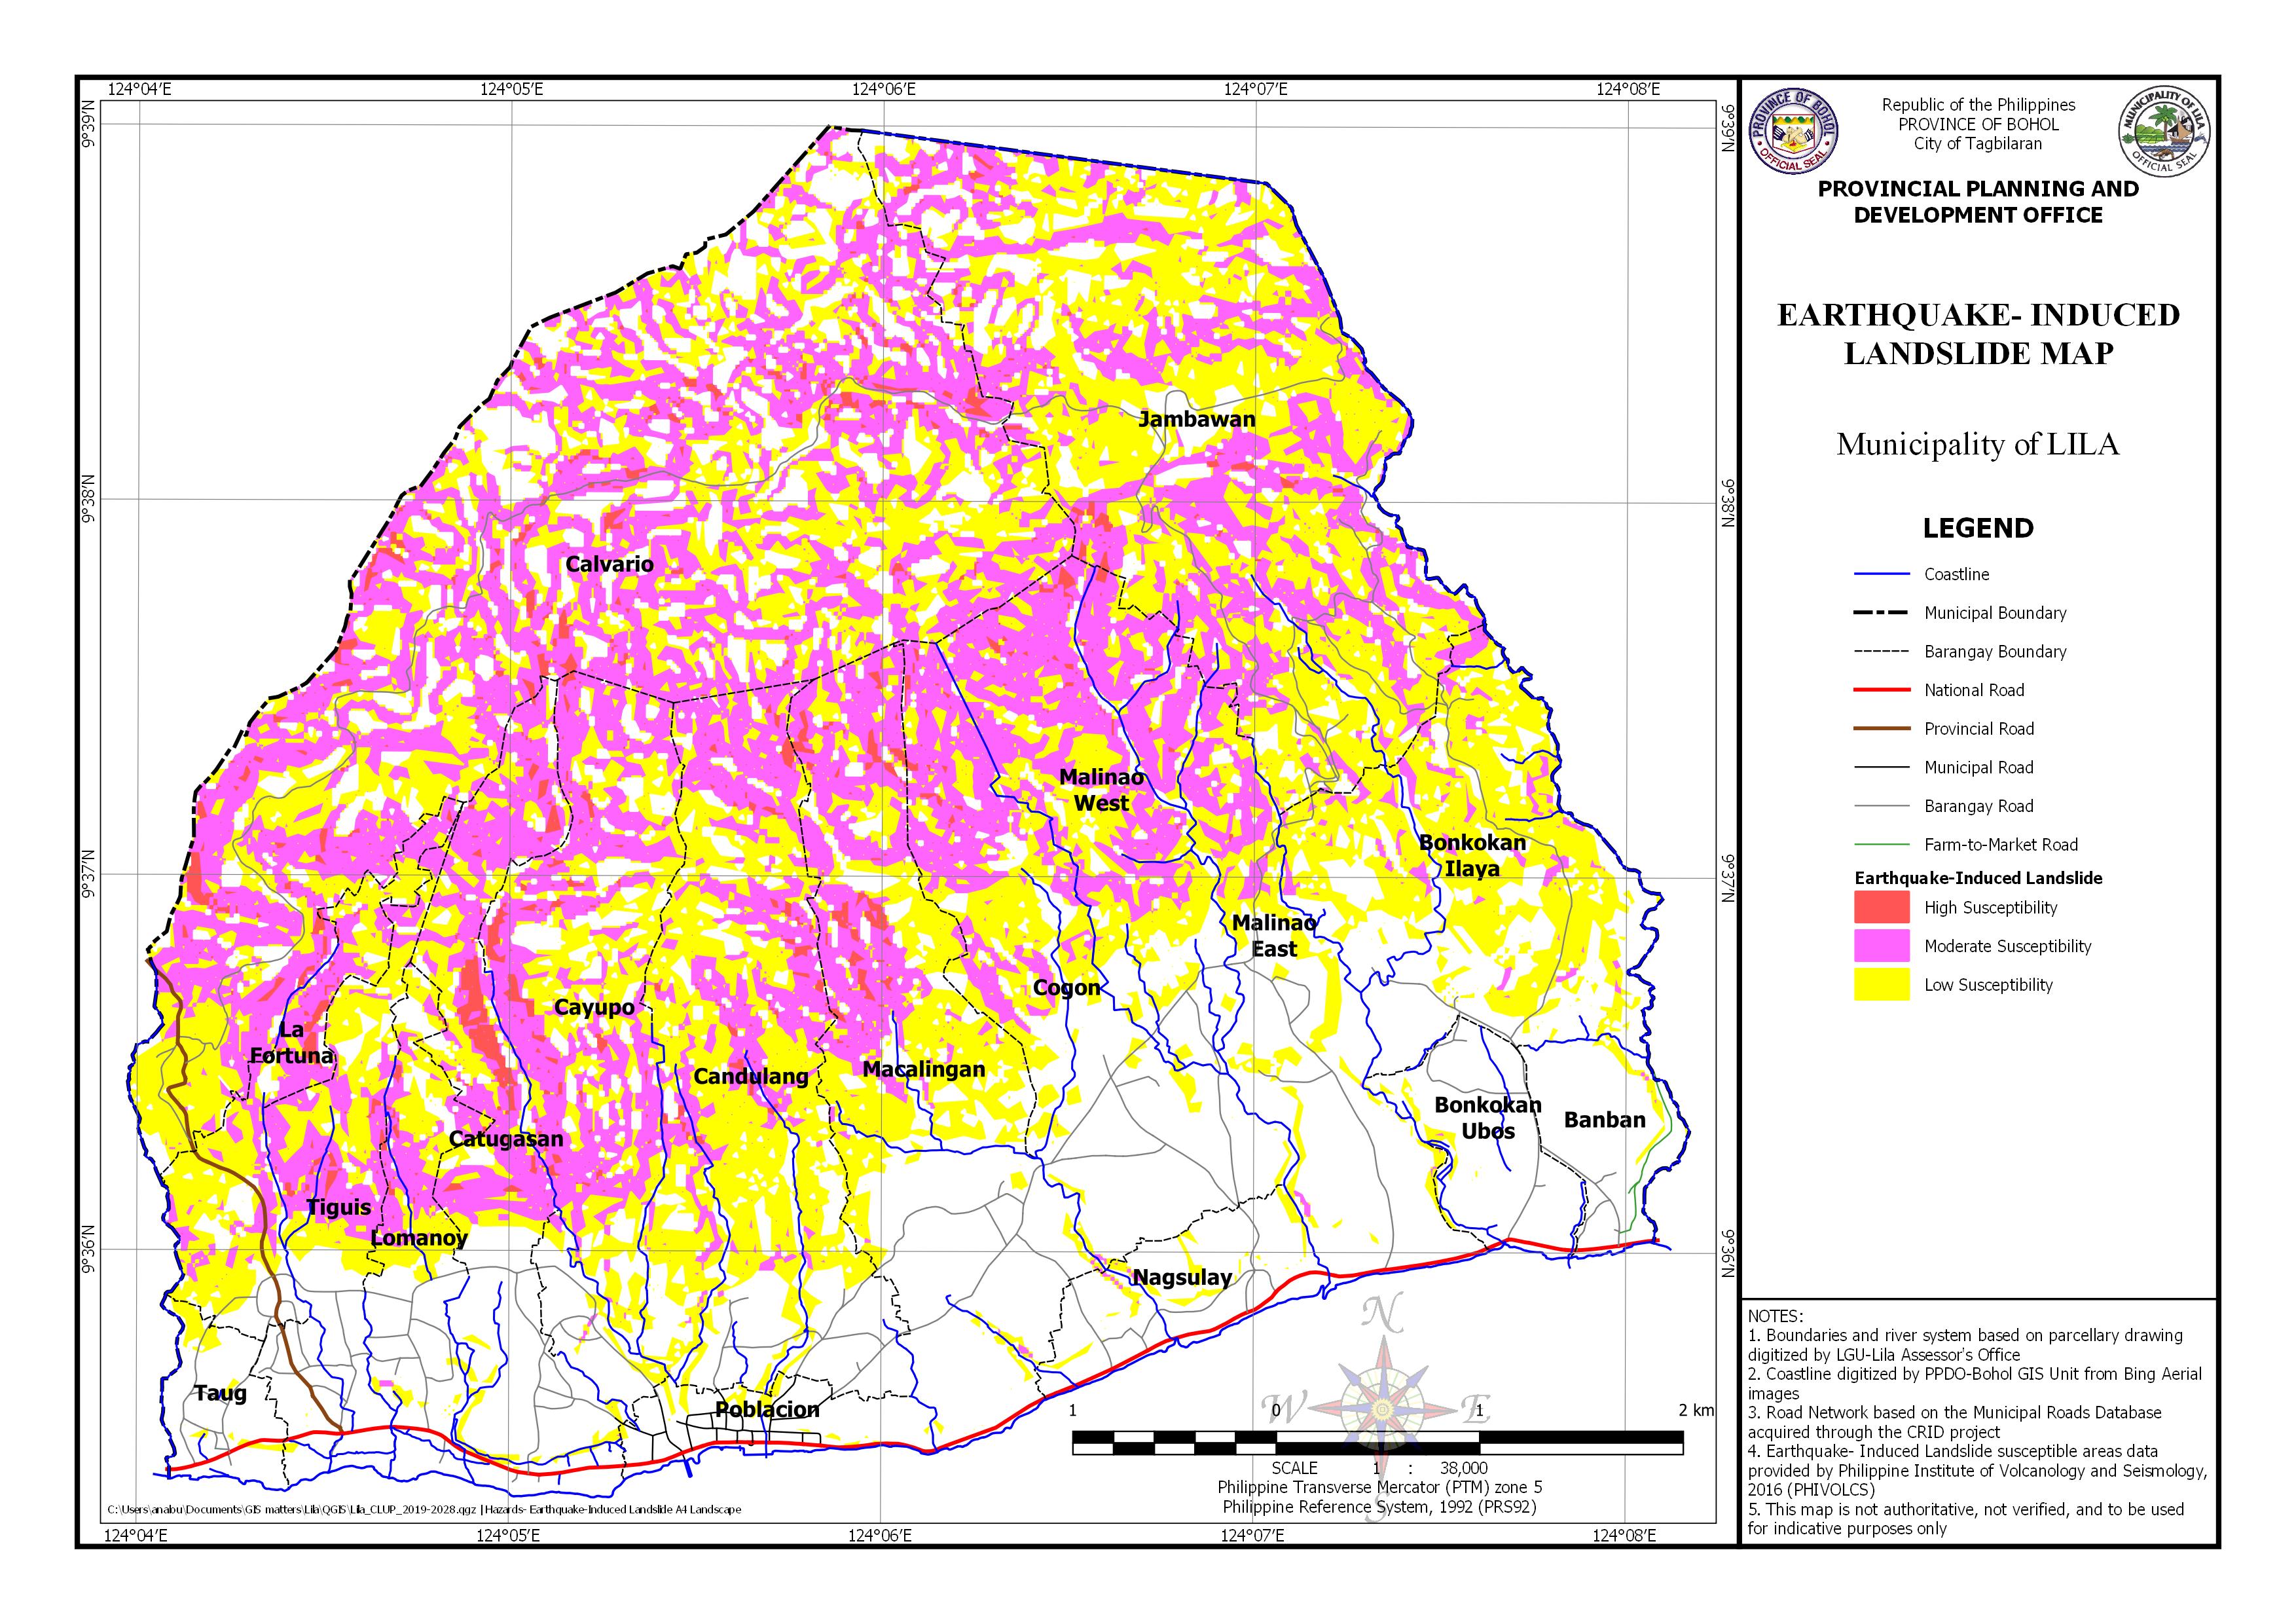 Earthquake-Induced Landslide Map